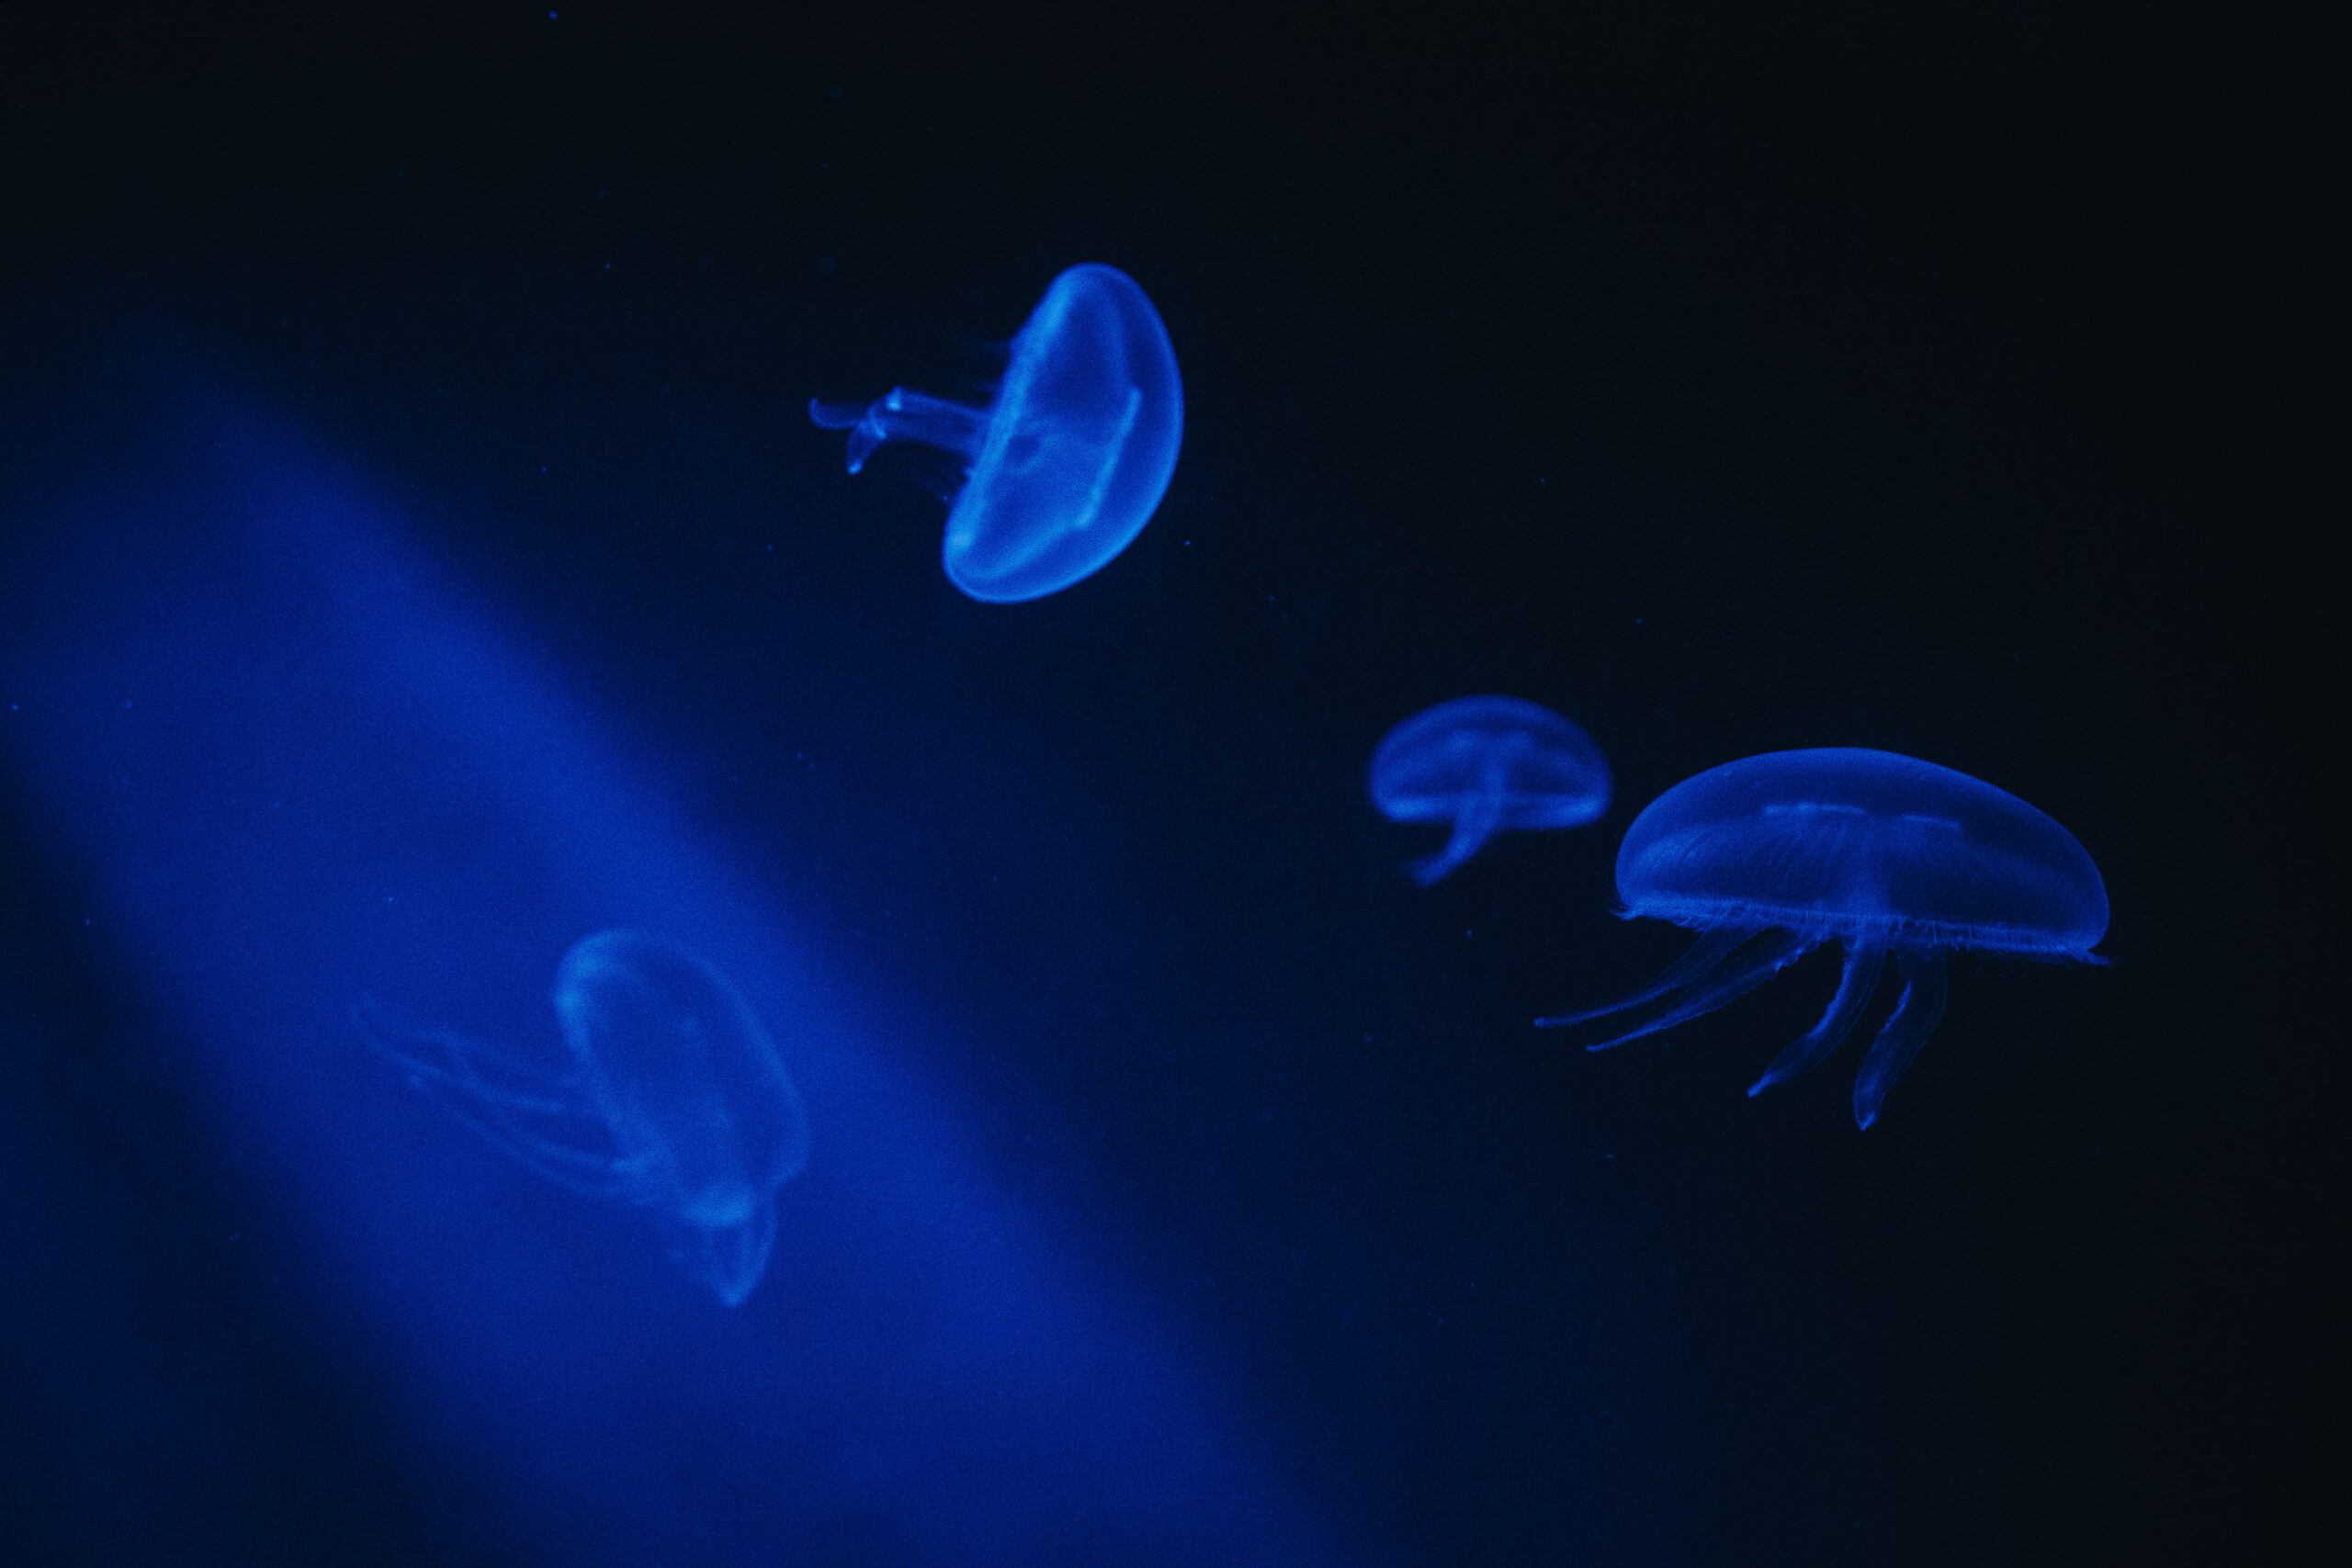 Blauwe foto van kleine kwallen in een donker aquarium gefotografeerd met een instap spiegelreflex camera